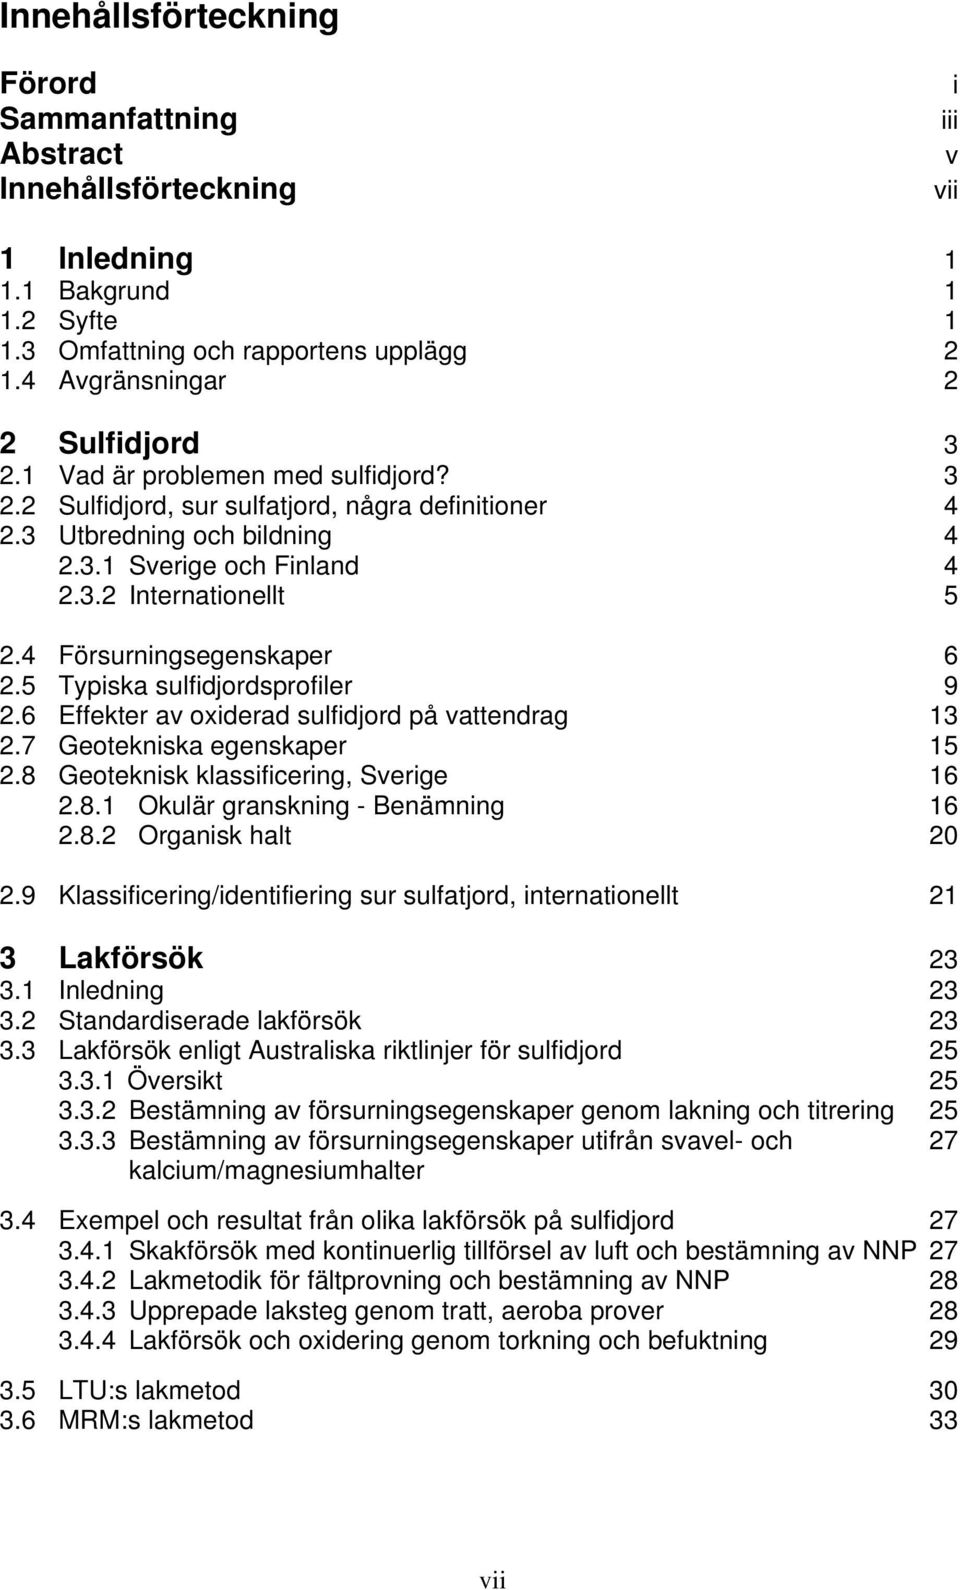 4 Försurningsegenskaper 6 2.5 Typiska sulfidjordsprofiler 9 2.6 Effekter av oxiderad sulfidjord på vattendrag 13 2.7 Geotekniska egenskaper 15 2.8 Geoteknisk klassificering, Sverige 16 2.8.1 Okulär granskning - Benämning 16 2.